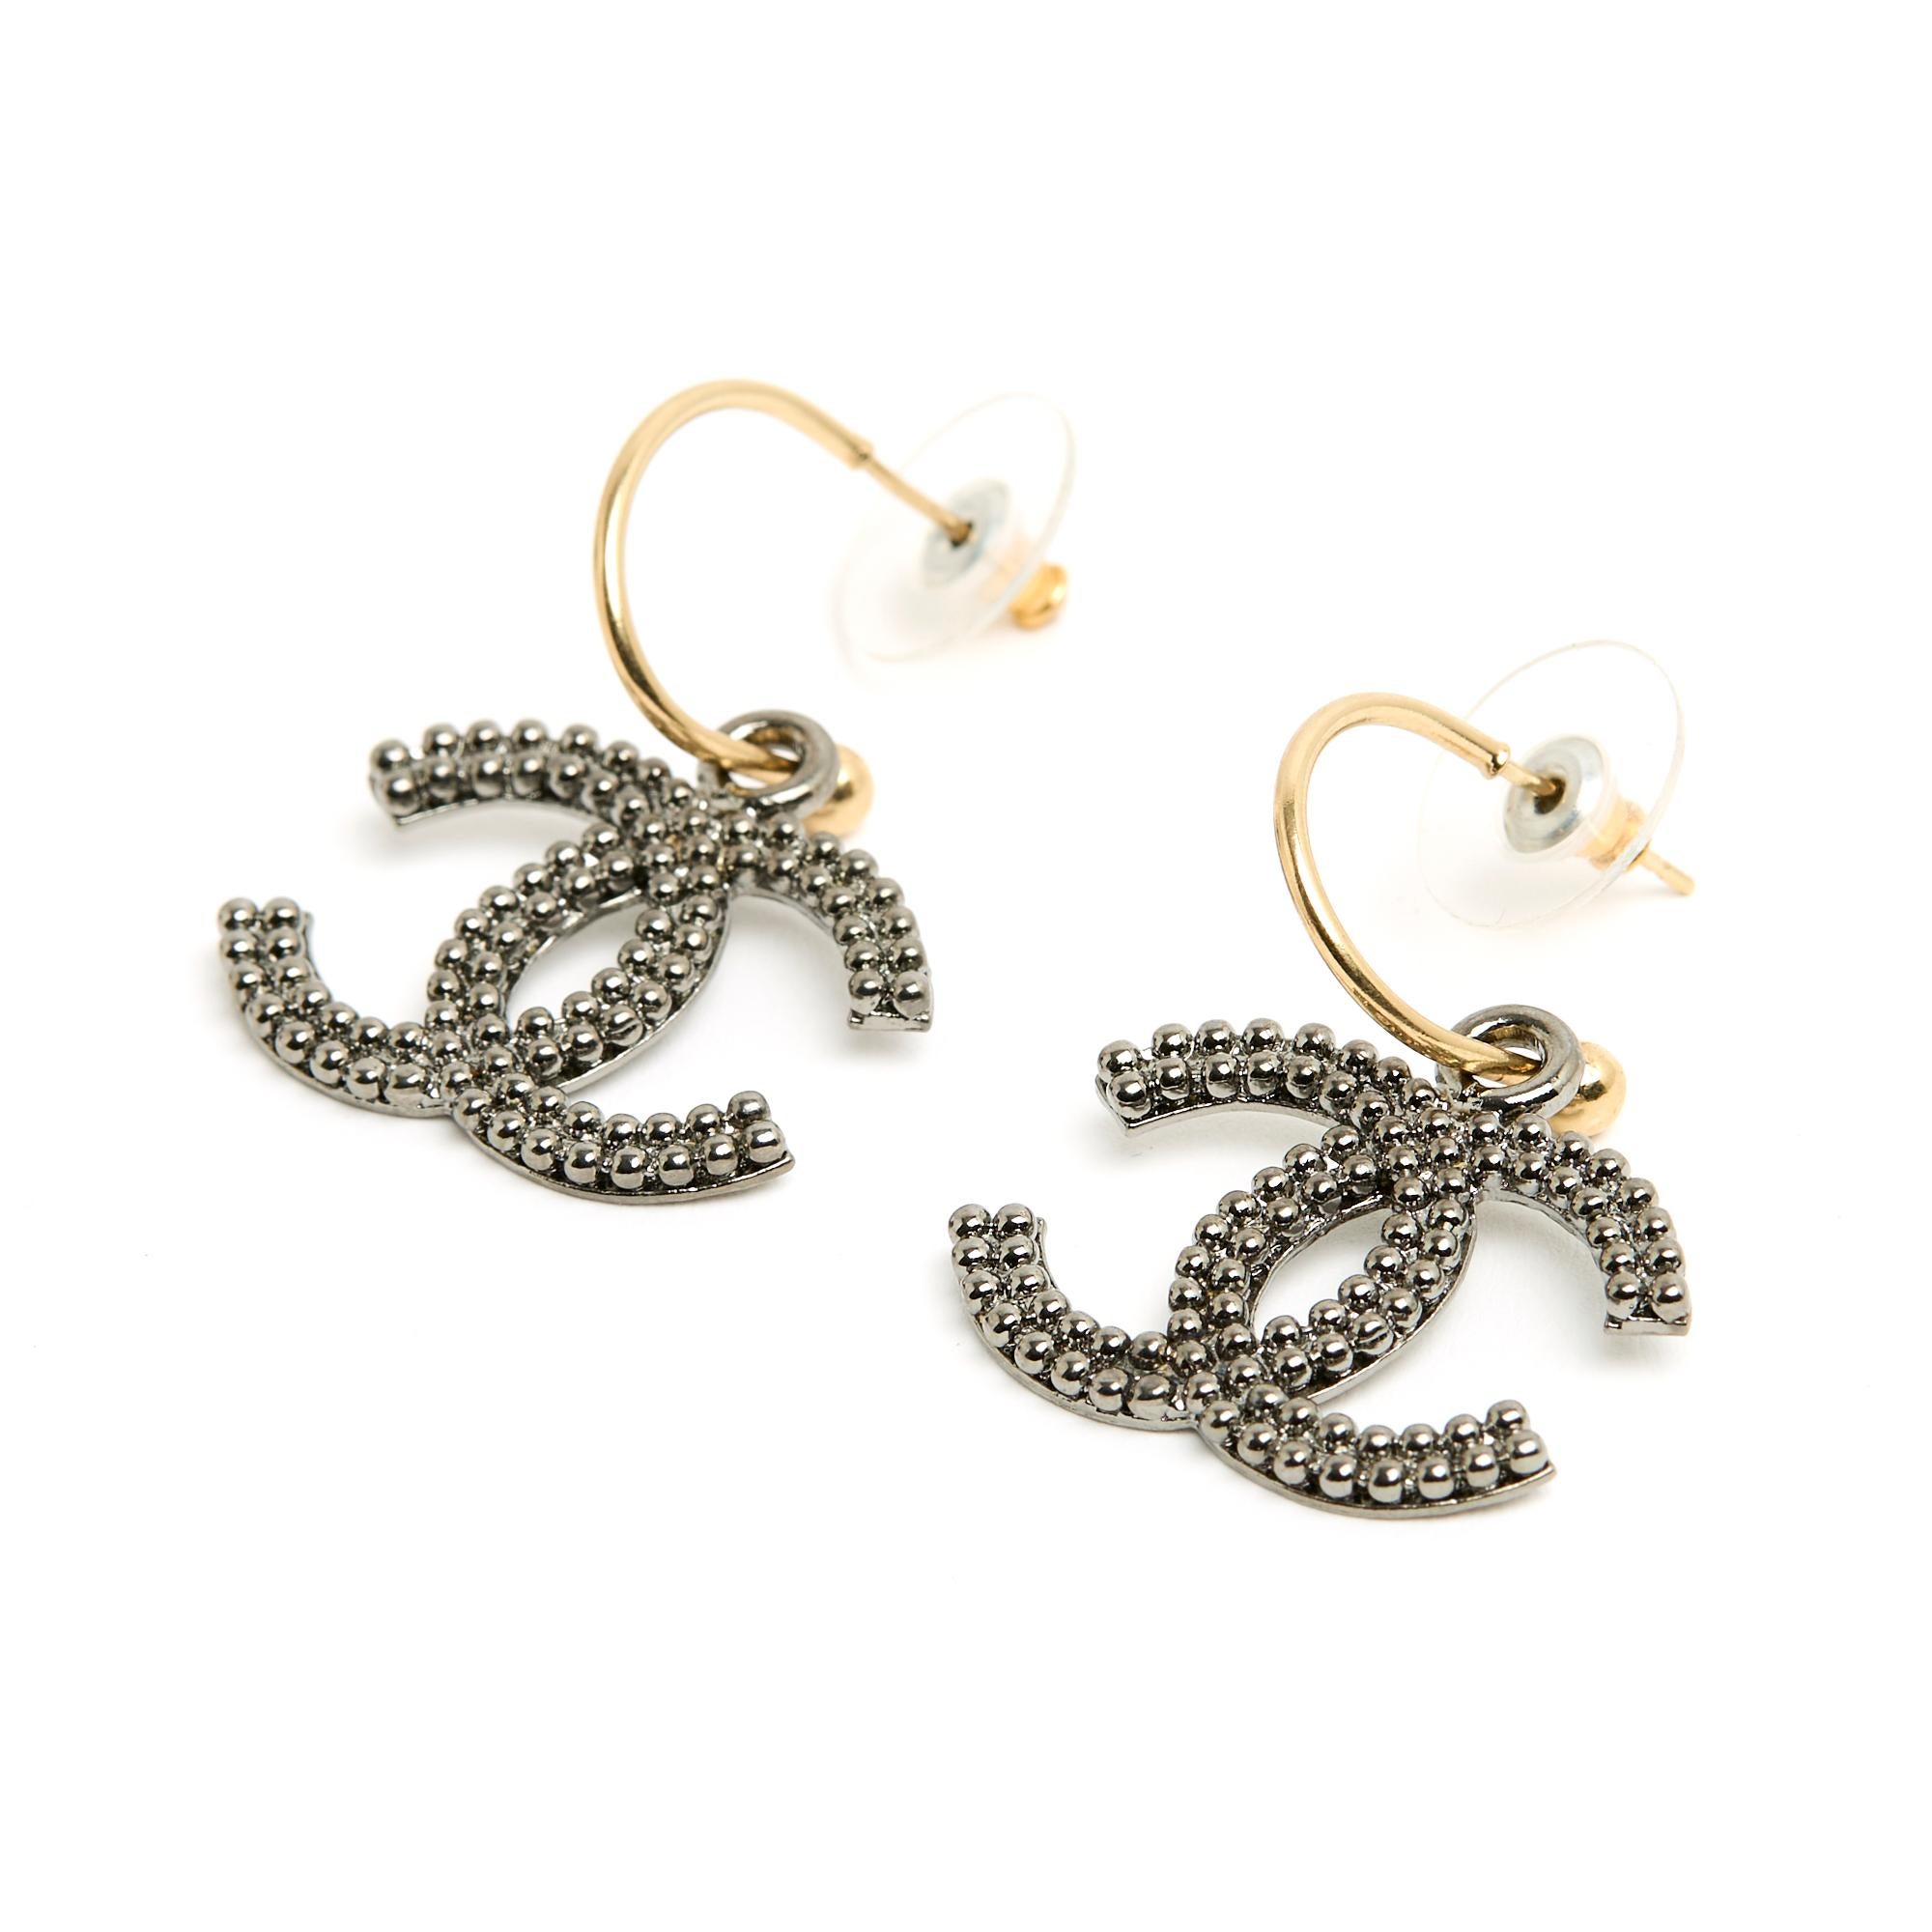 Chanel-Ohrringe, bestehend aus einem kleinen Reif aus goldenem Metall und einem Anhänger in Form des Chanel CC-Logos aus geschwärztem, silbernem Metall, genannt 